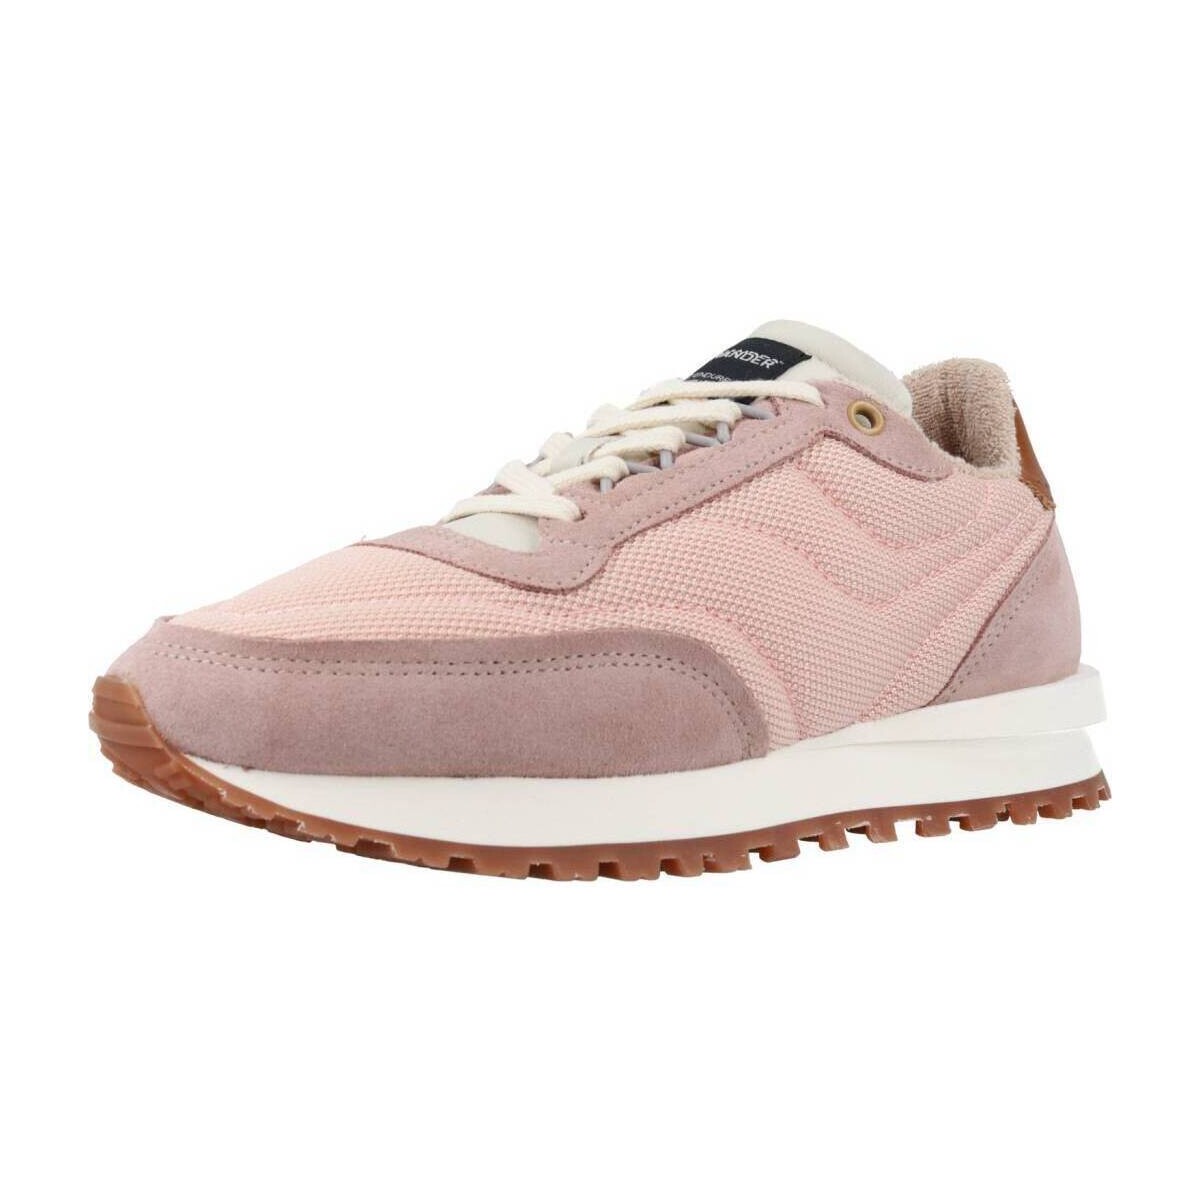 Pantofi Femei Sneakers Hidnander TENKEI roz